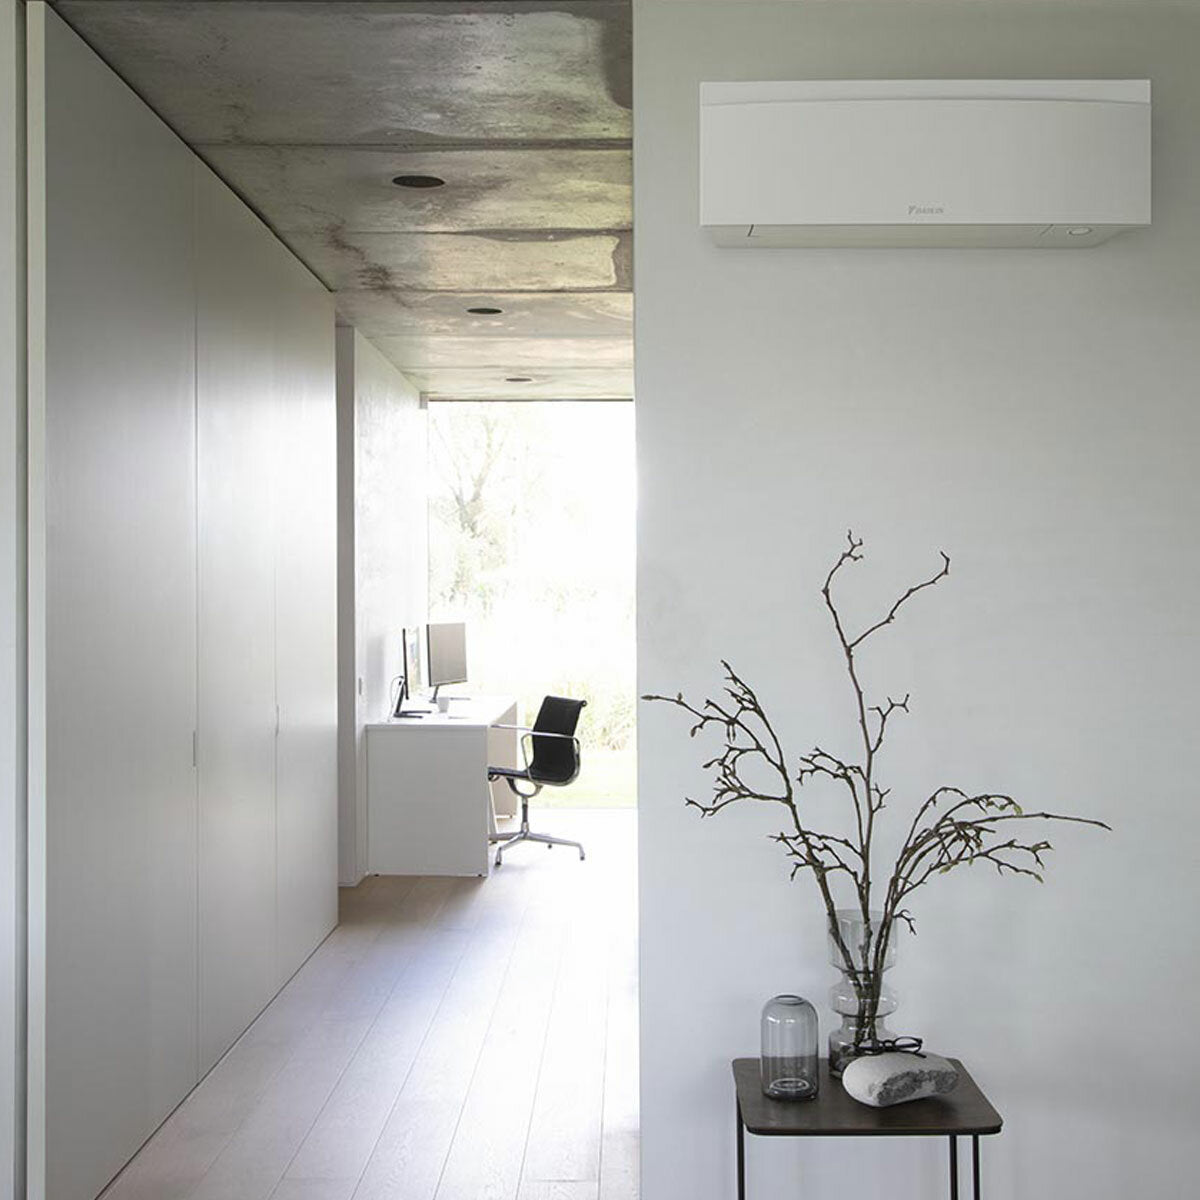 Daikin Emura air conditioner 3 split panels 7000+9000+9000+18000 BTU inverter A++ wifi outdoor unit 7.4 kW White